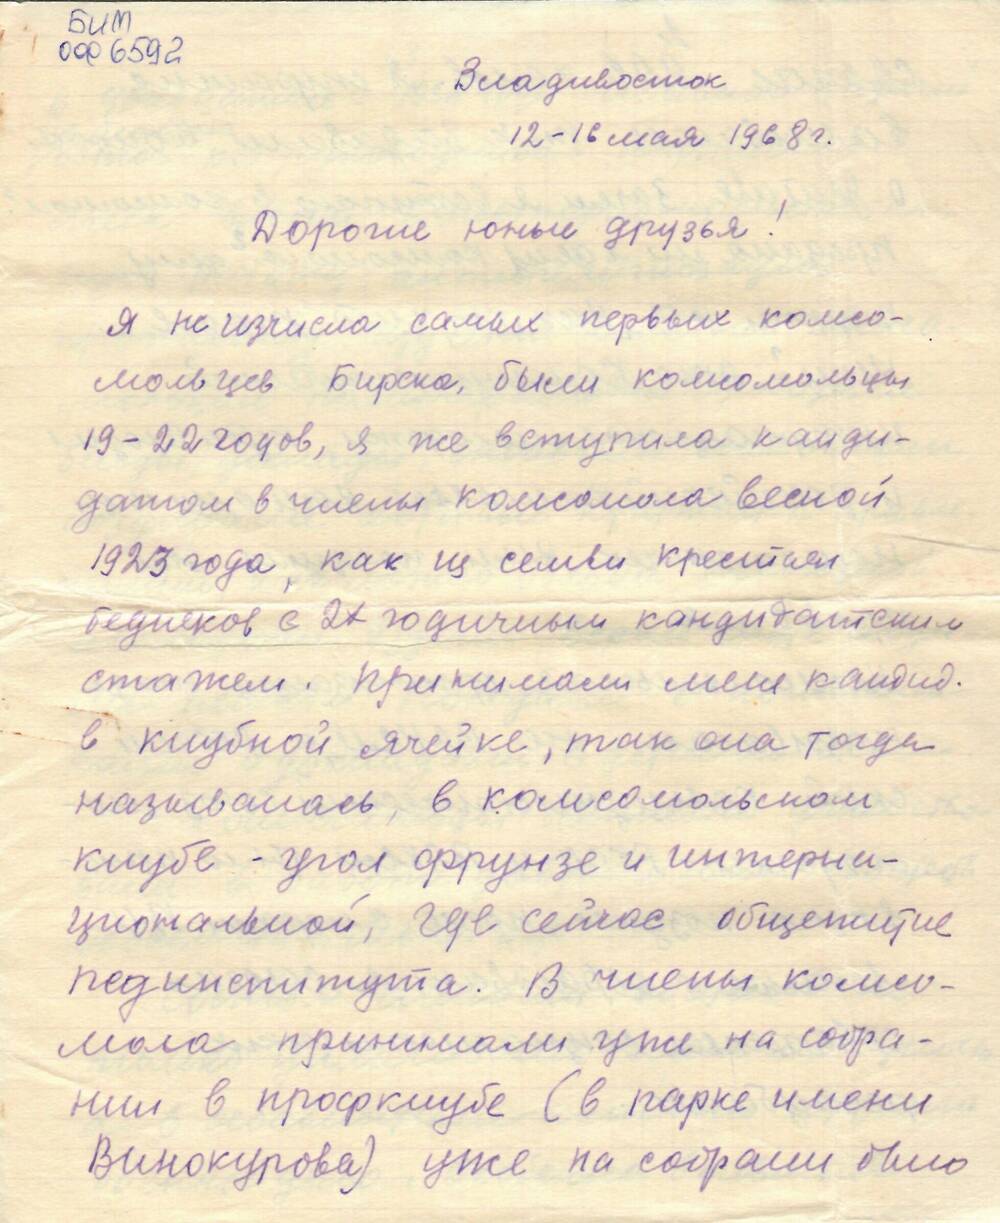 Письмо - воспоминание Килиной О.Н. о комсомольской деятельности